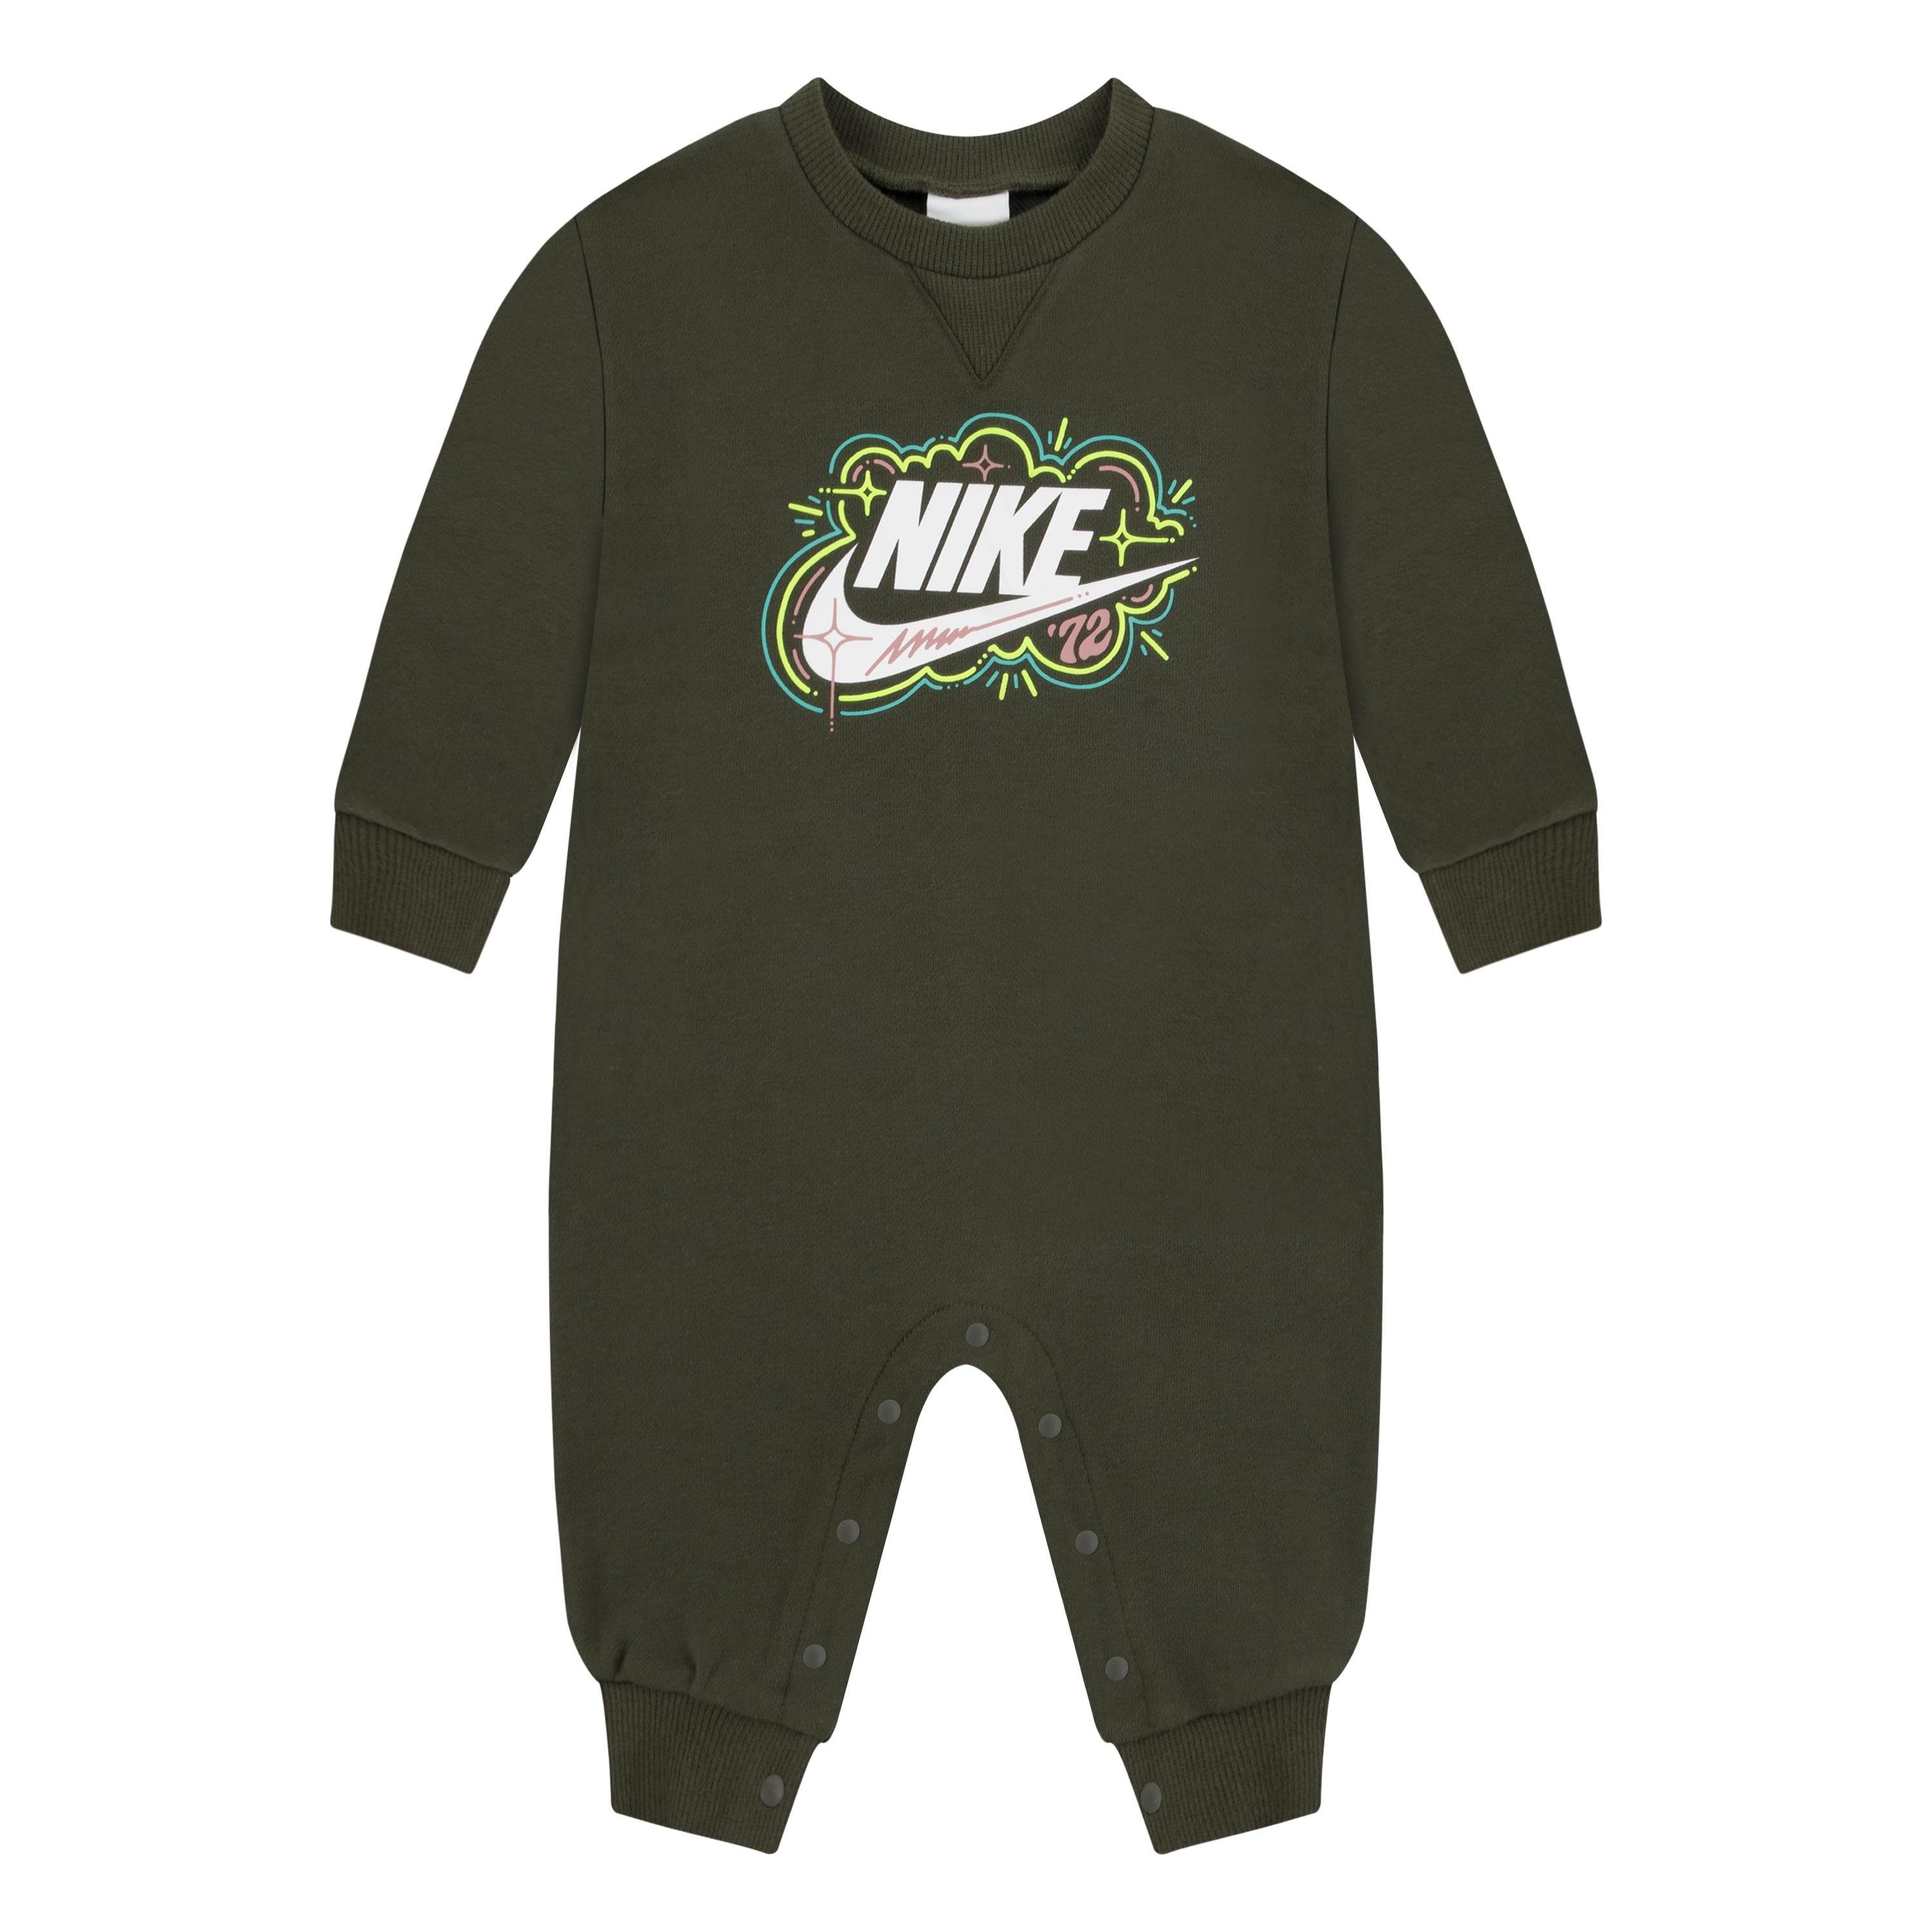 Nike Sportswear Langarmbody für Kinder cargo khaki